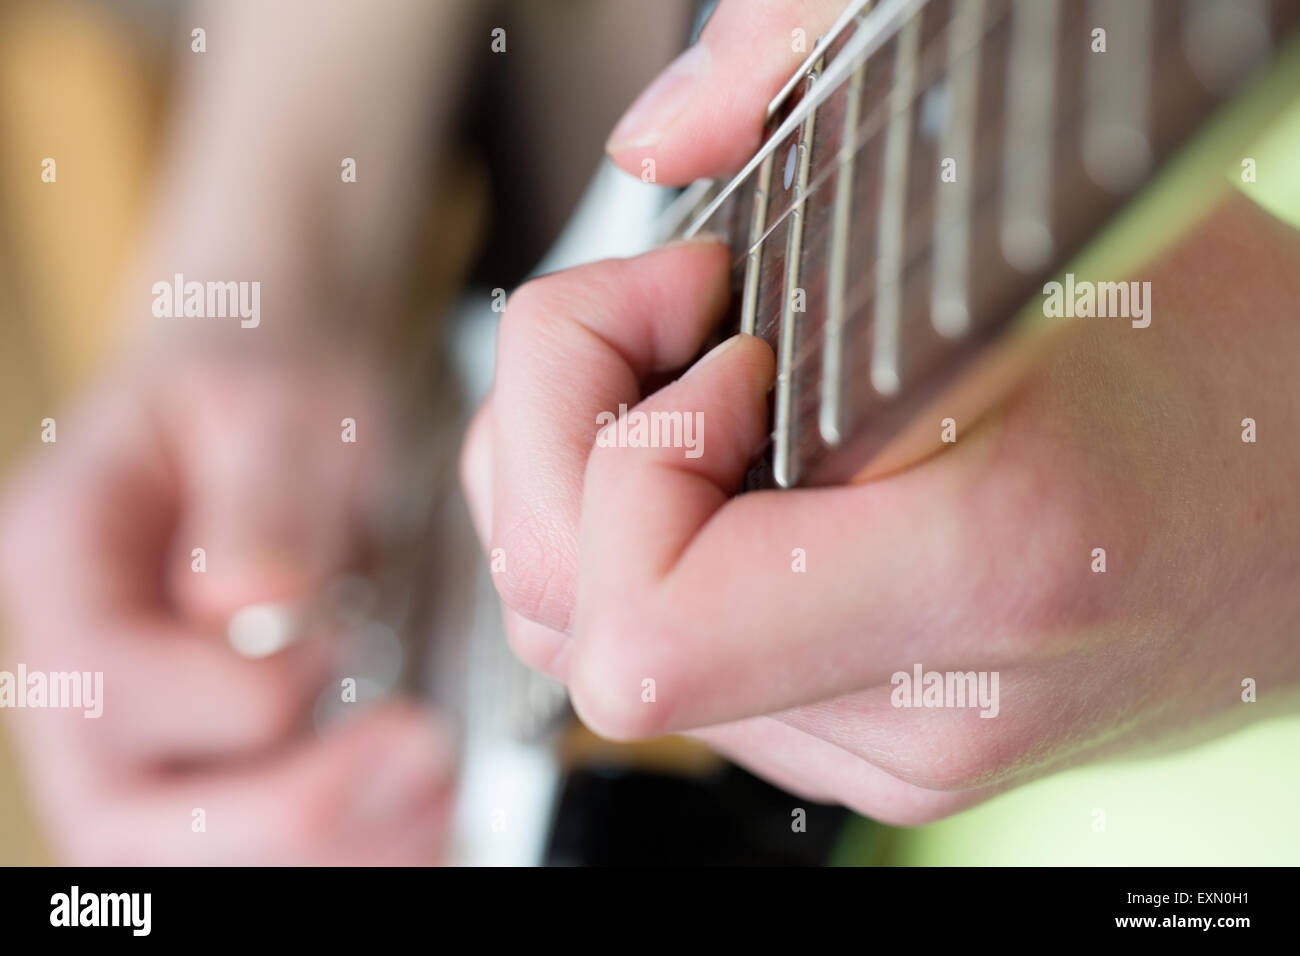 Un gros plan d'un accord joué sur une guitare électrique fret board. Le guitariste n'est pas nette mais peut seulement être vu à l'aide d'un plectre. Banque D'Images